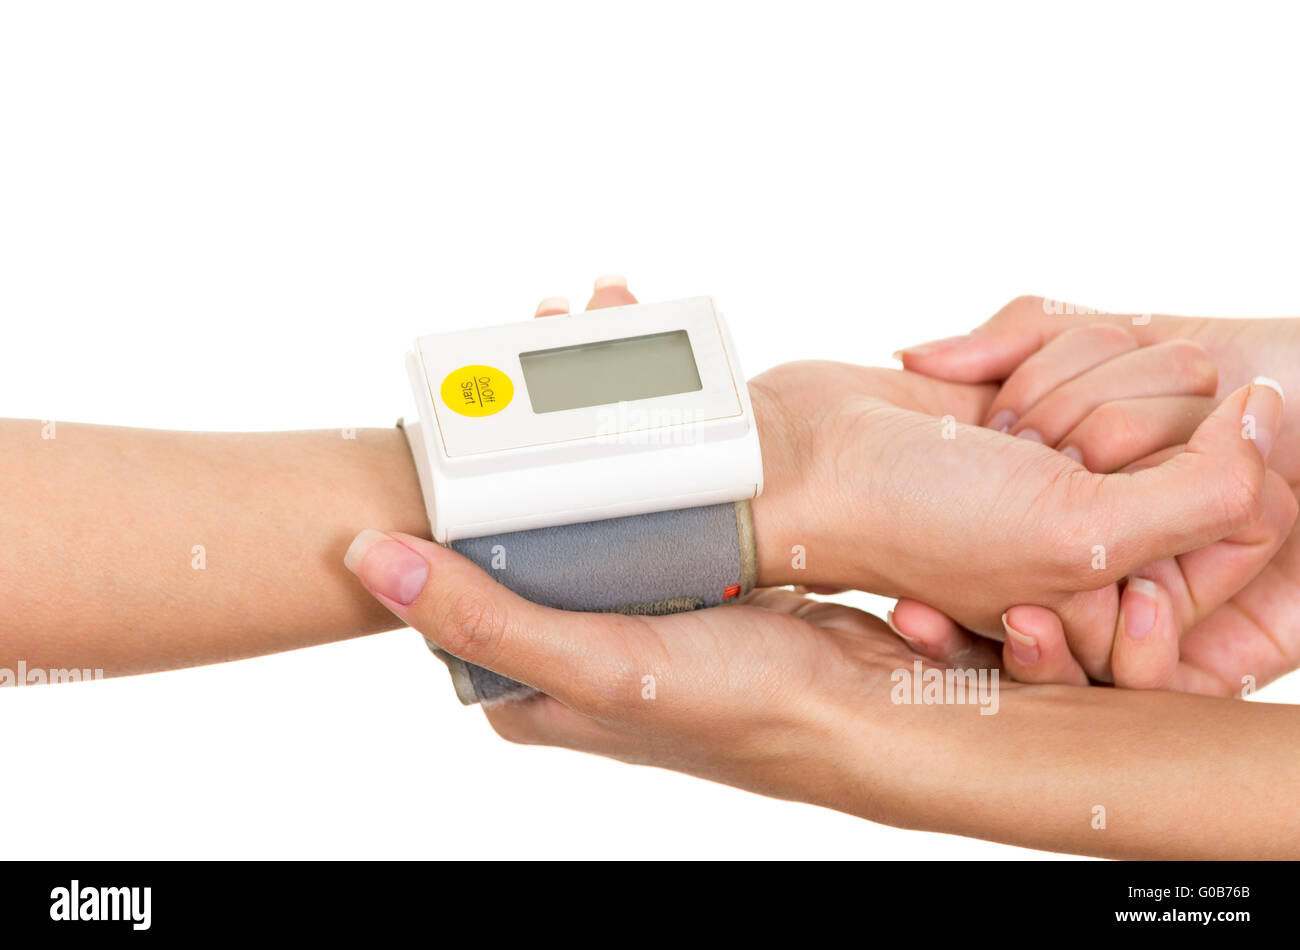 Bras de mesure du glucose chez les patients avec mètre autour du poignet et de l'appui des mains qui tiennent les médecins Banque D'Images